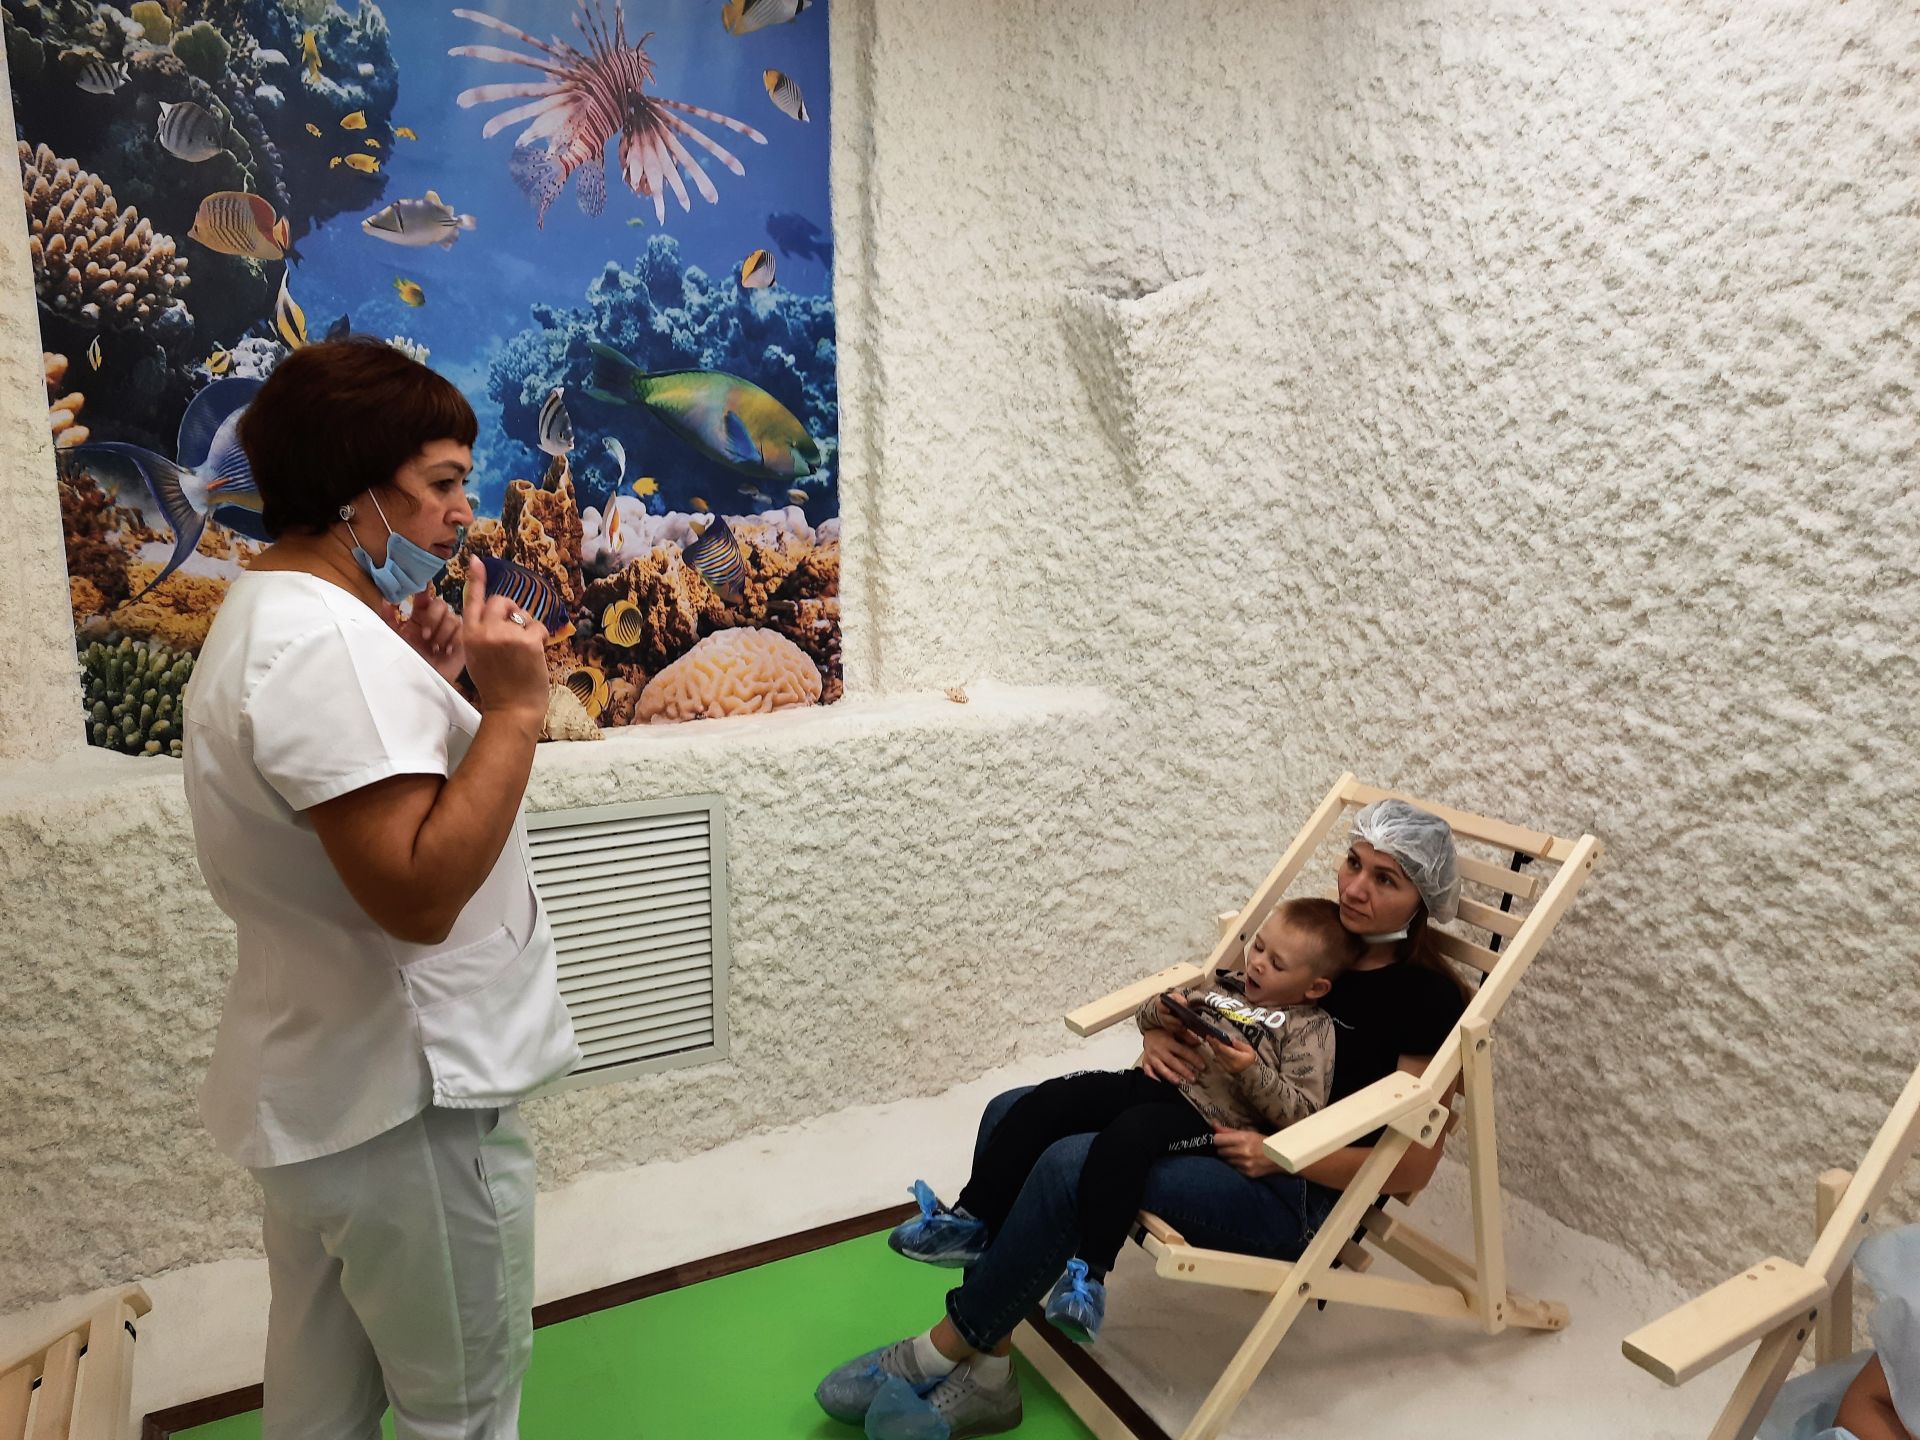 В Чистопольской детской поликлинике открылась соляная комната